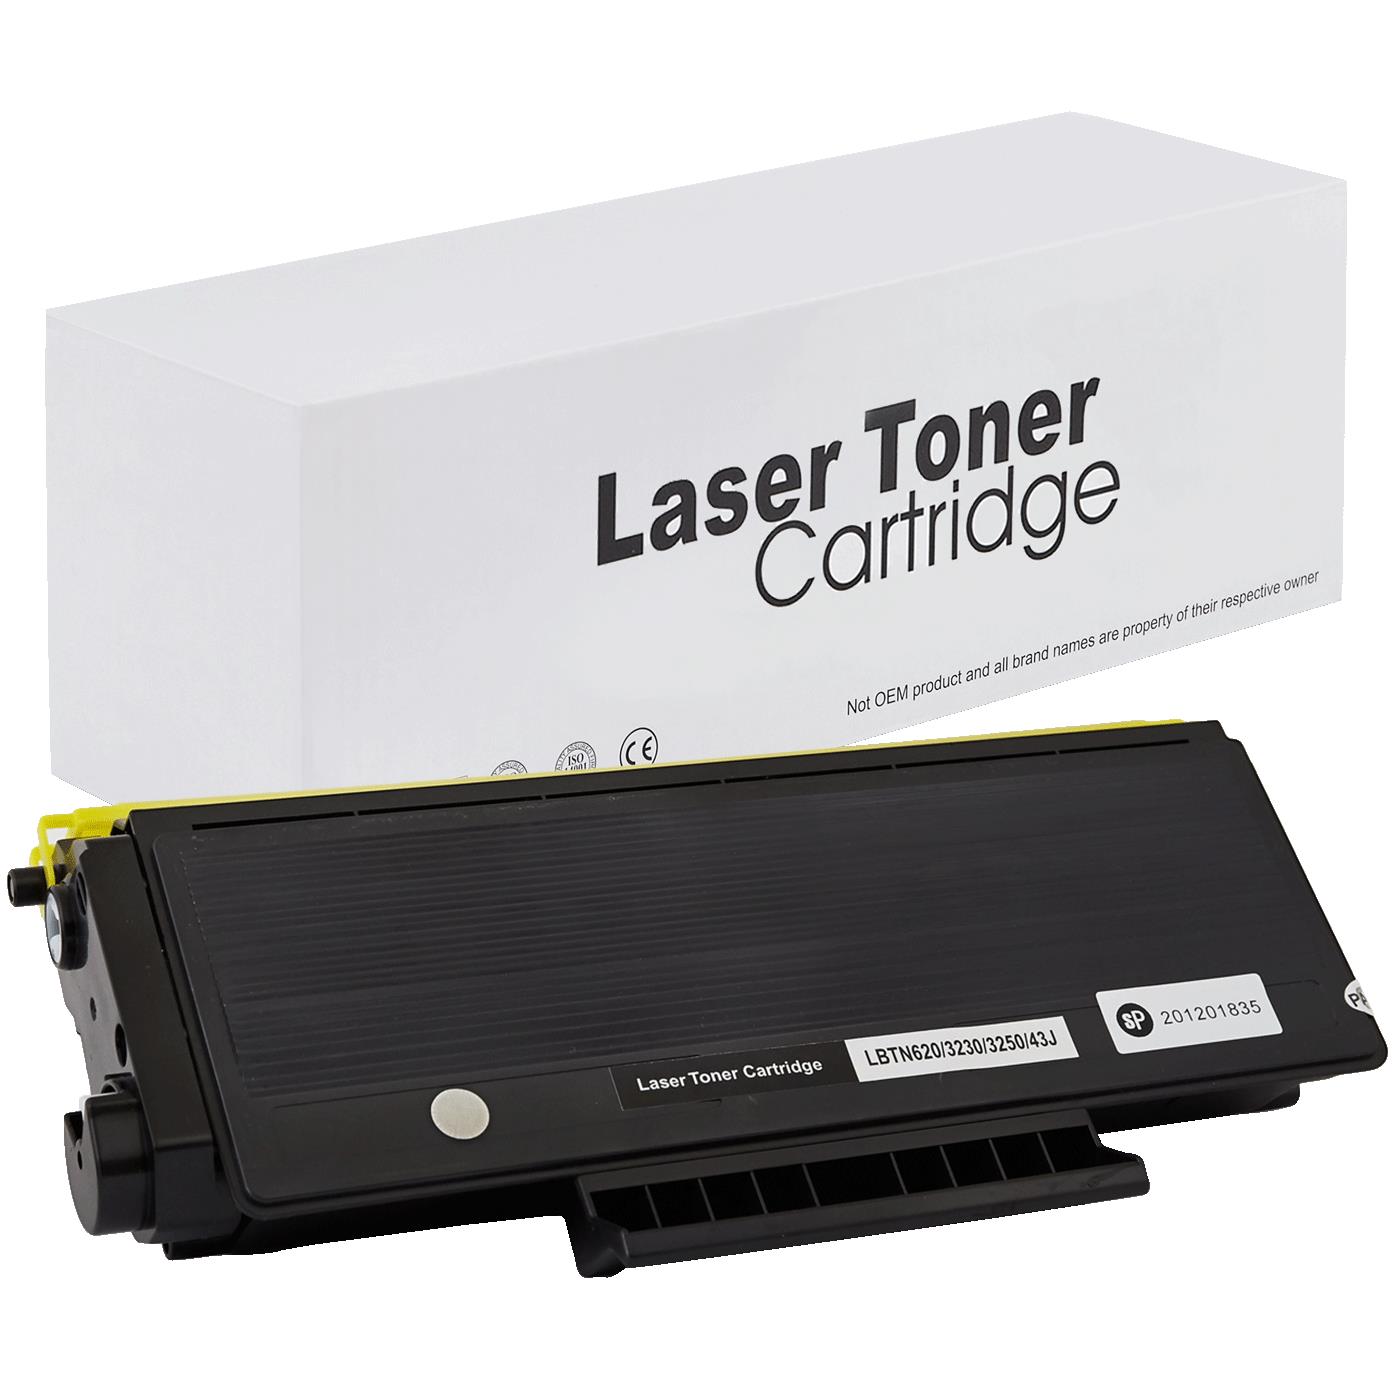 съвместима тонер касета за принтери и печатащи устройства на Brother DCP 8070 D Toner BR-3230 | TN3230. Ниски цени, прецизно изпълнение, високо качество.